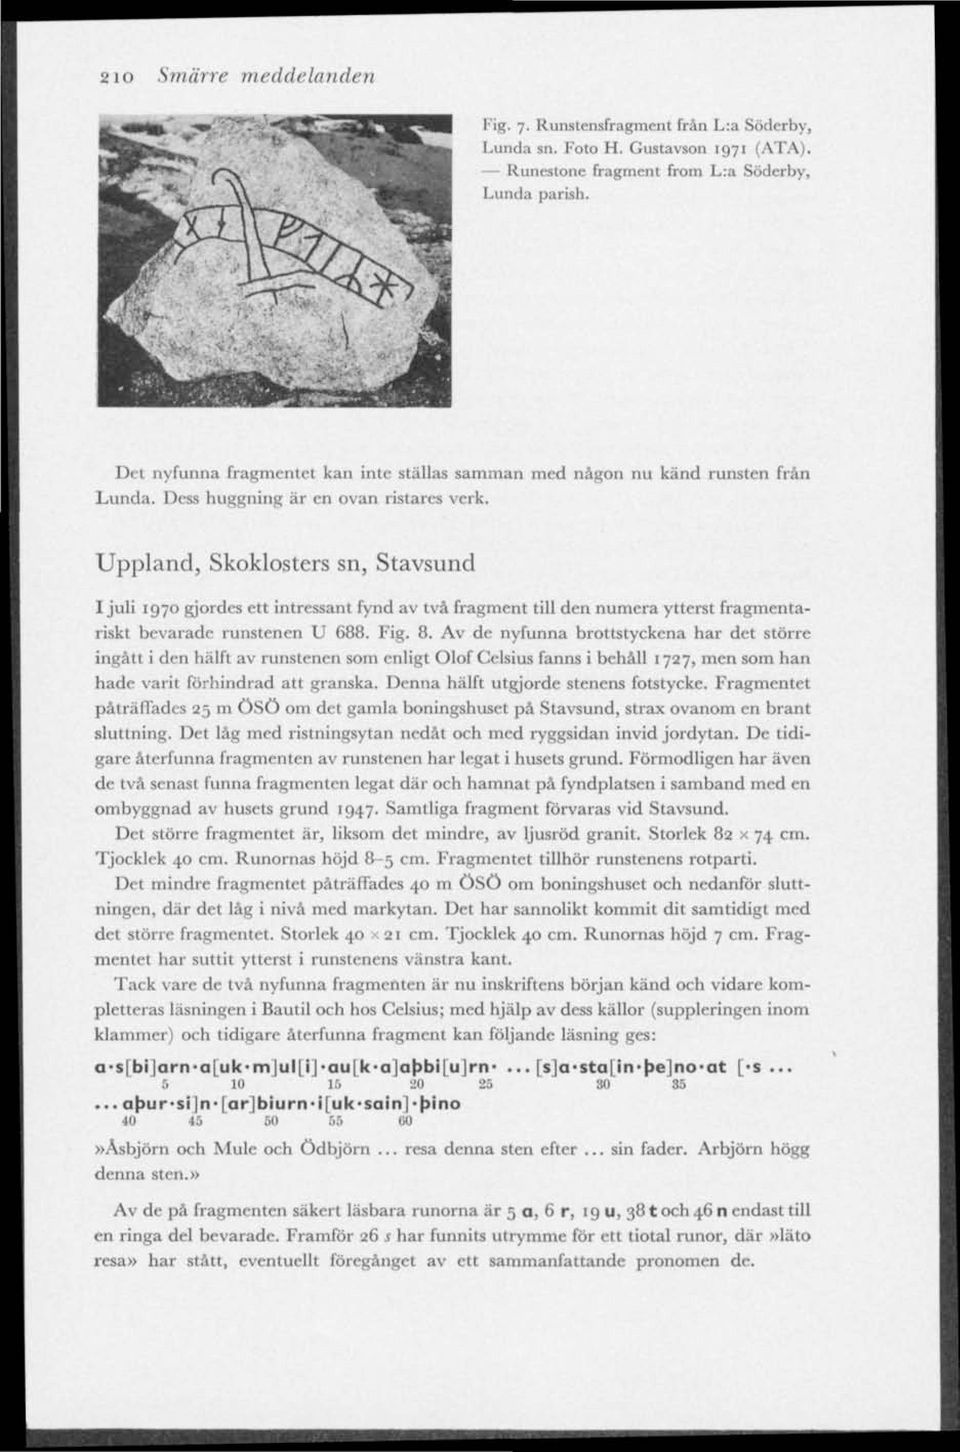 Uppland, Skoklosters sn, Stavsund I juli 1970 gjordes ett intressant fynd av två fragment till den numera ytterst fragmentariskt bevarade runstenen U 688. Fig. 8.